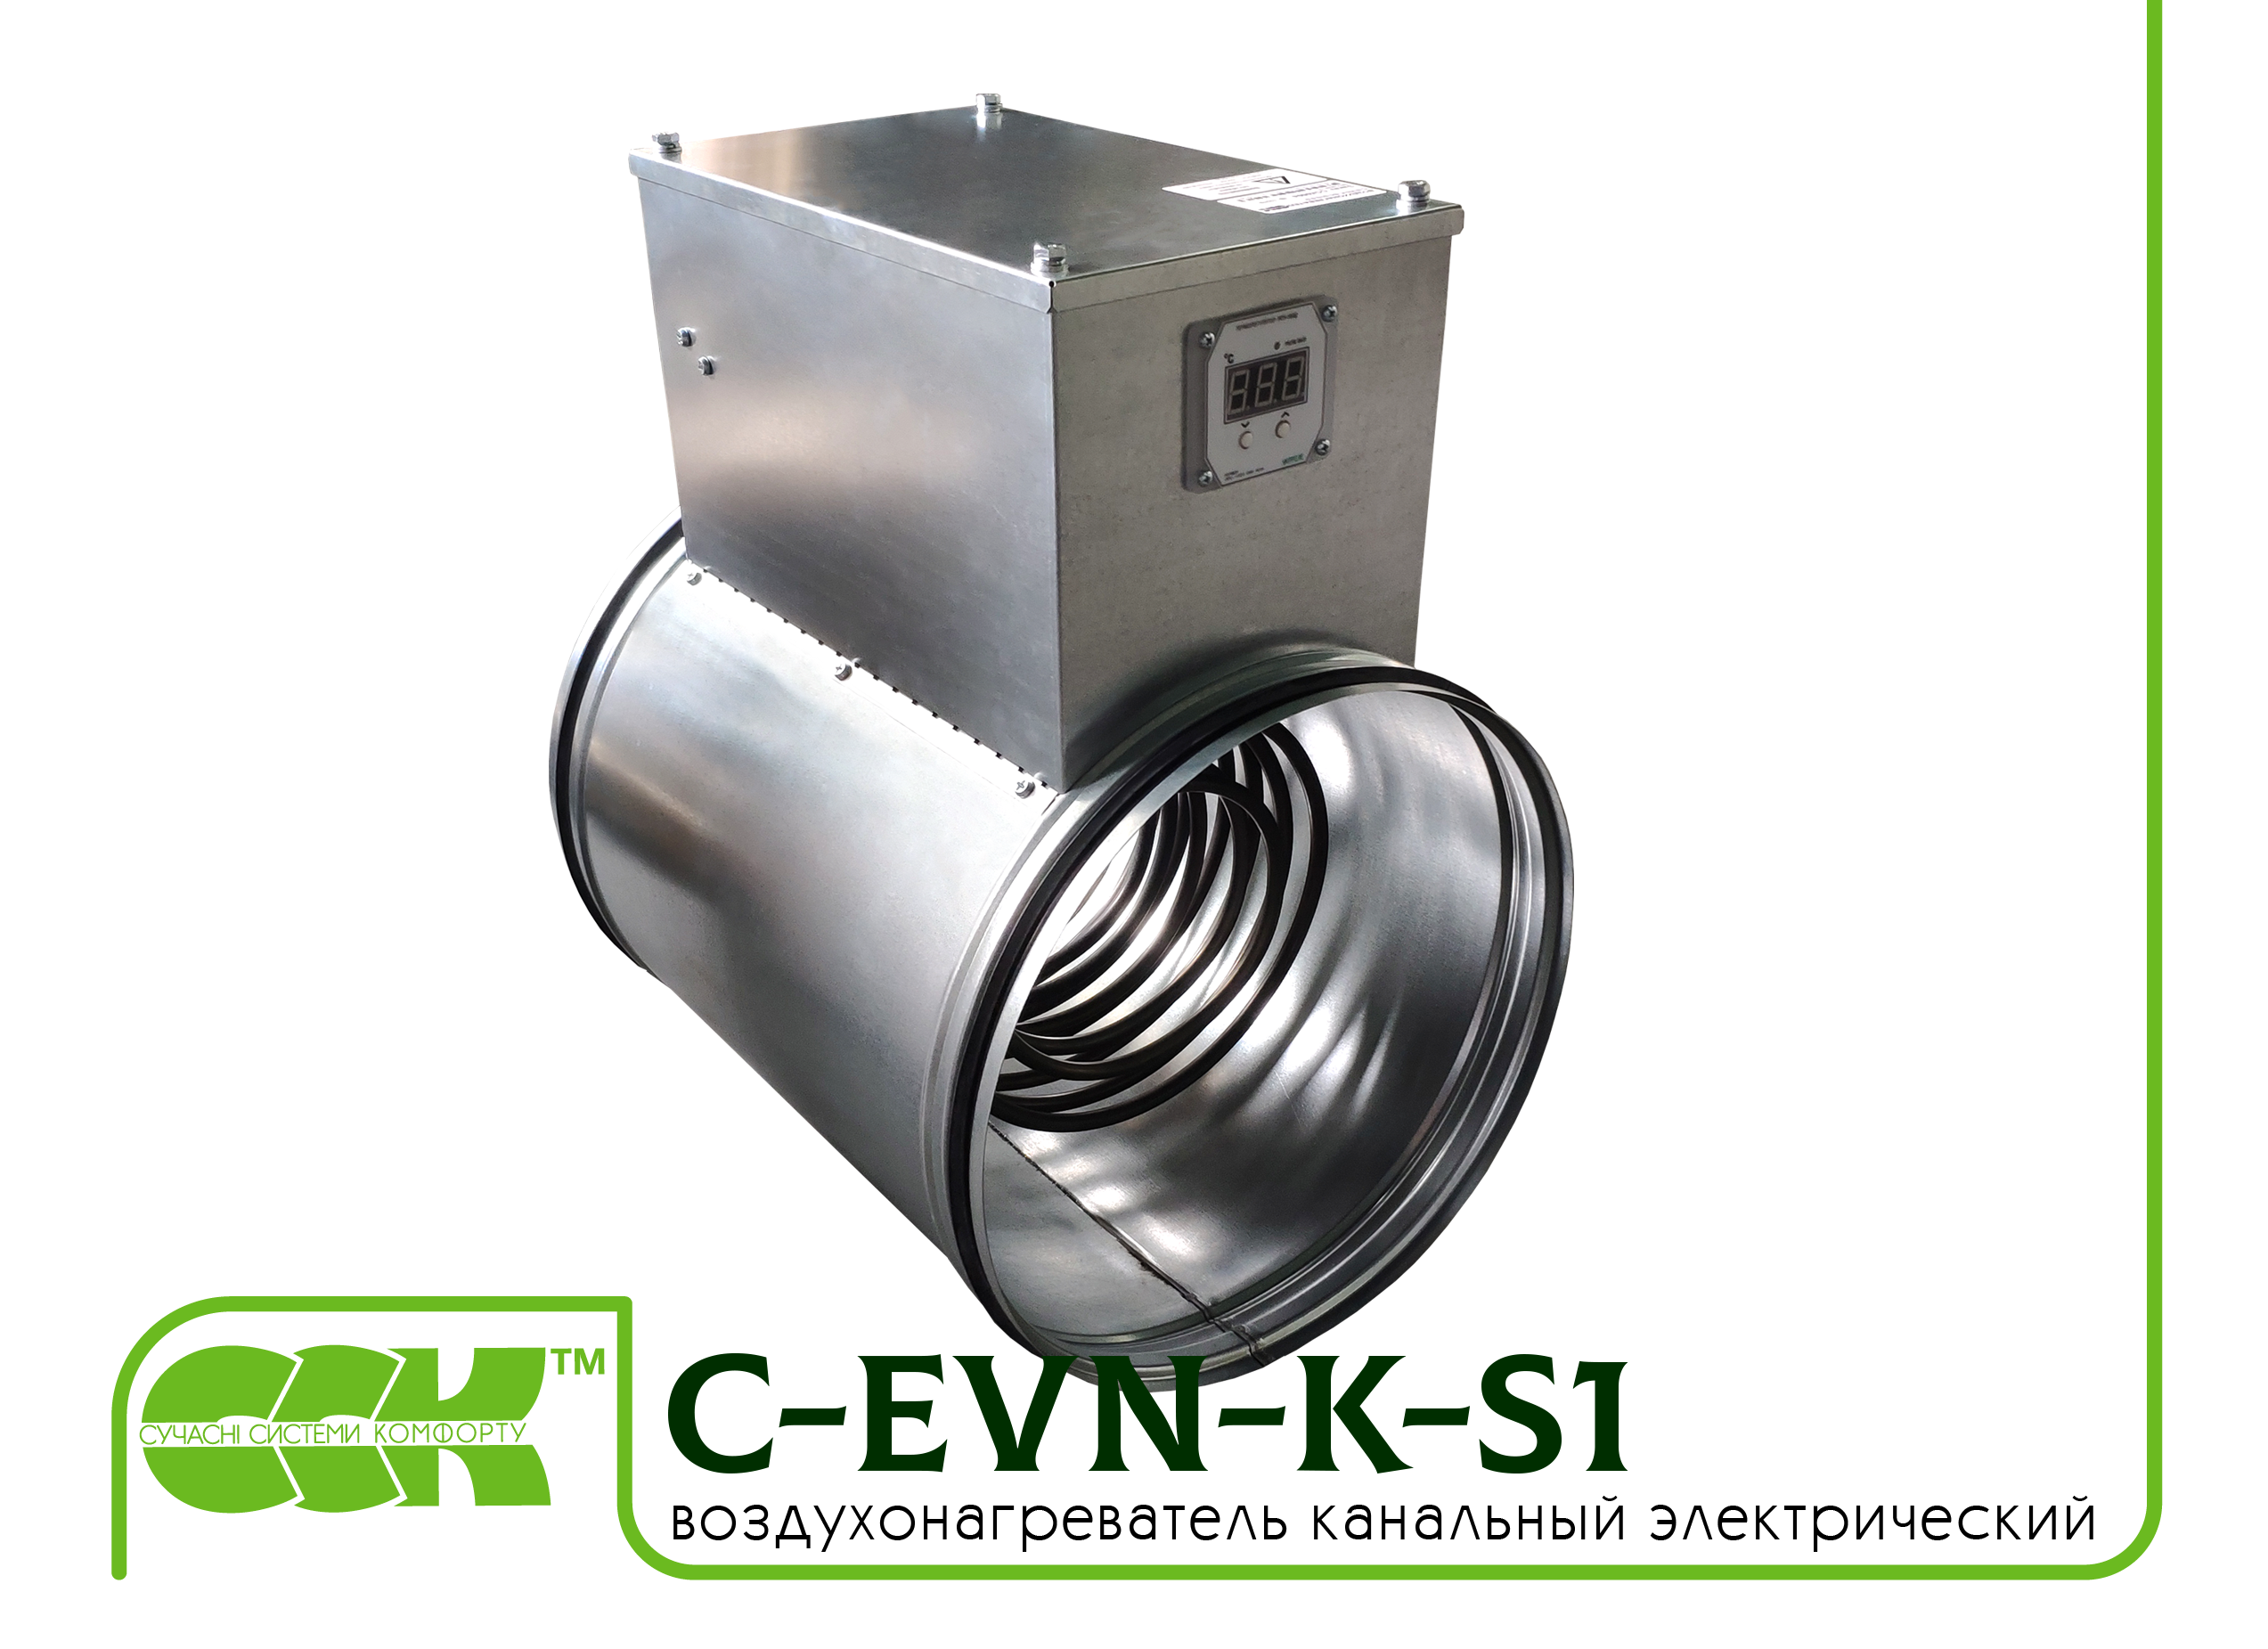 Воздухонагреватель канальный электрический для круглых каналов C-EVN-K-S1-200-6,0